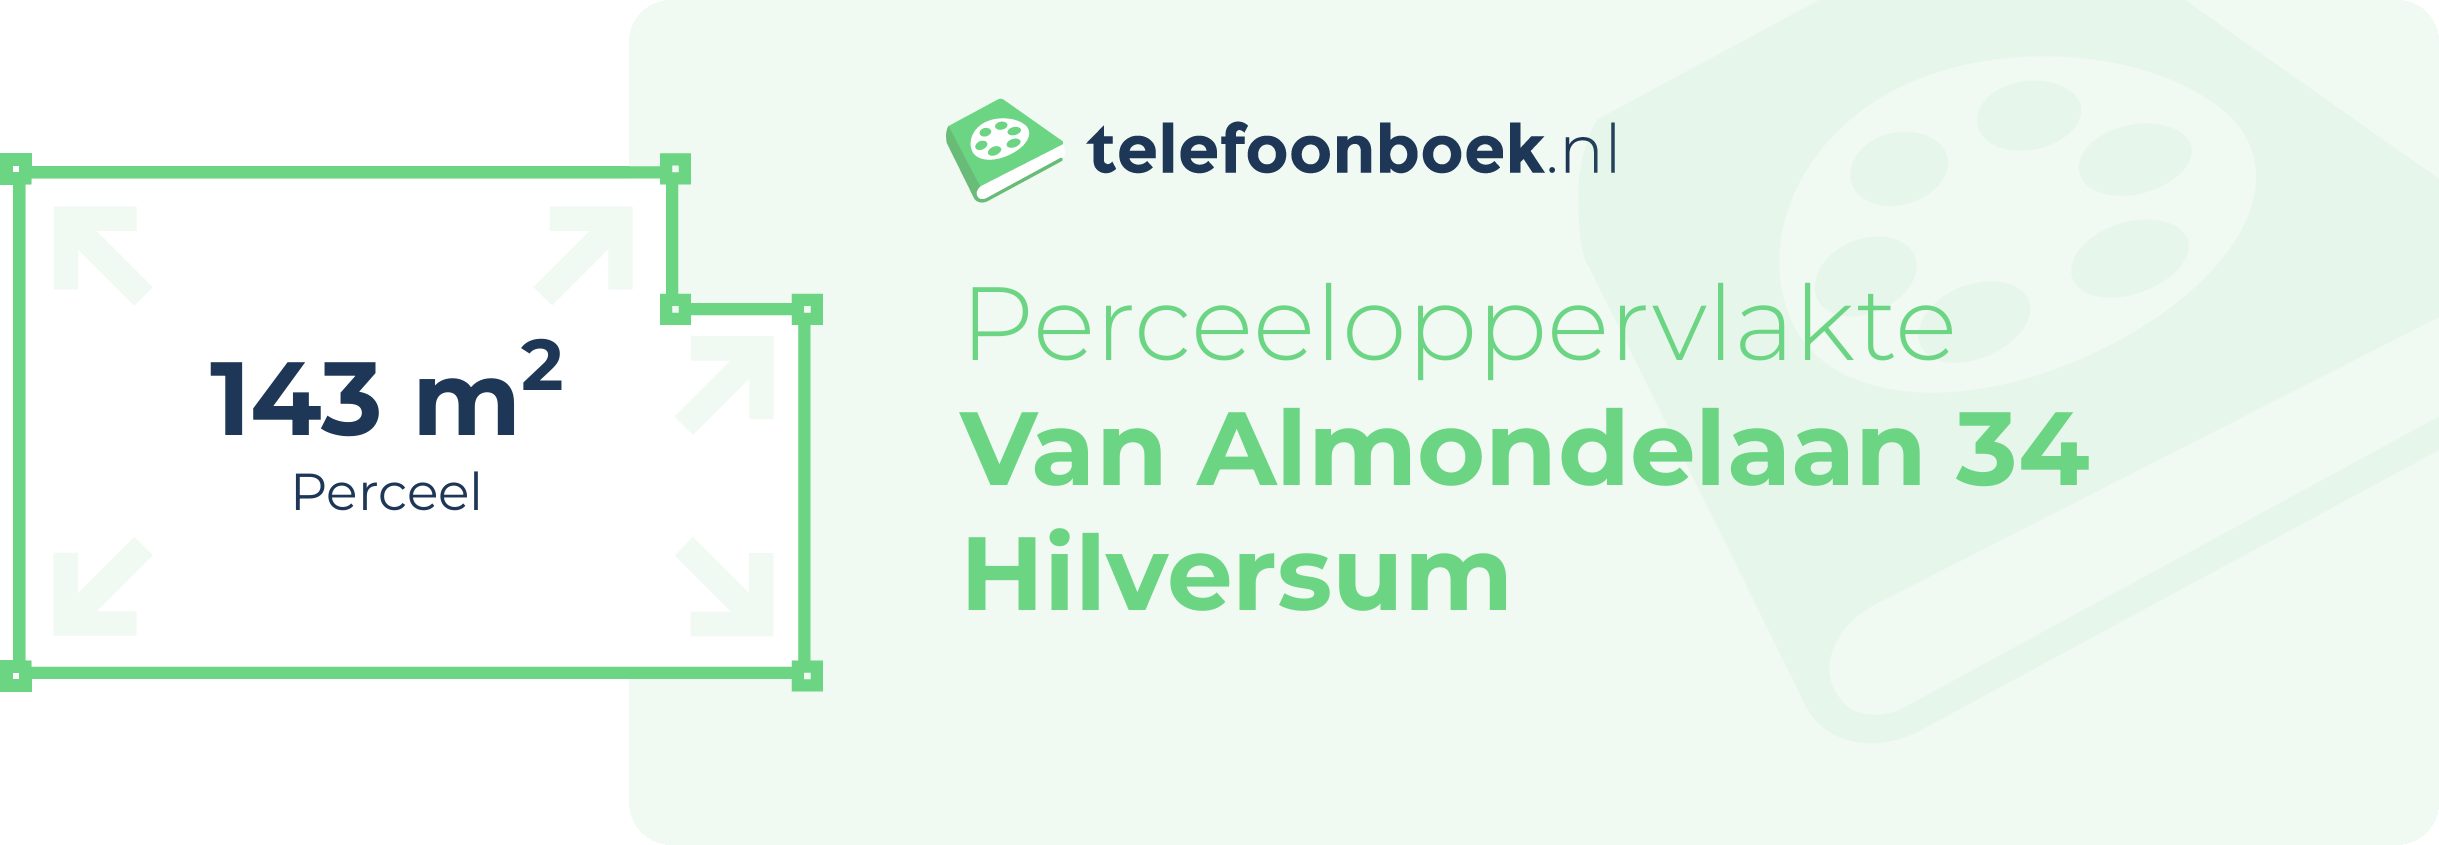 Perceeloppervlakte Van Almondelaan 34 Hilversum